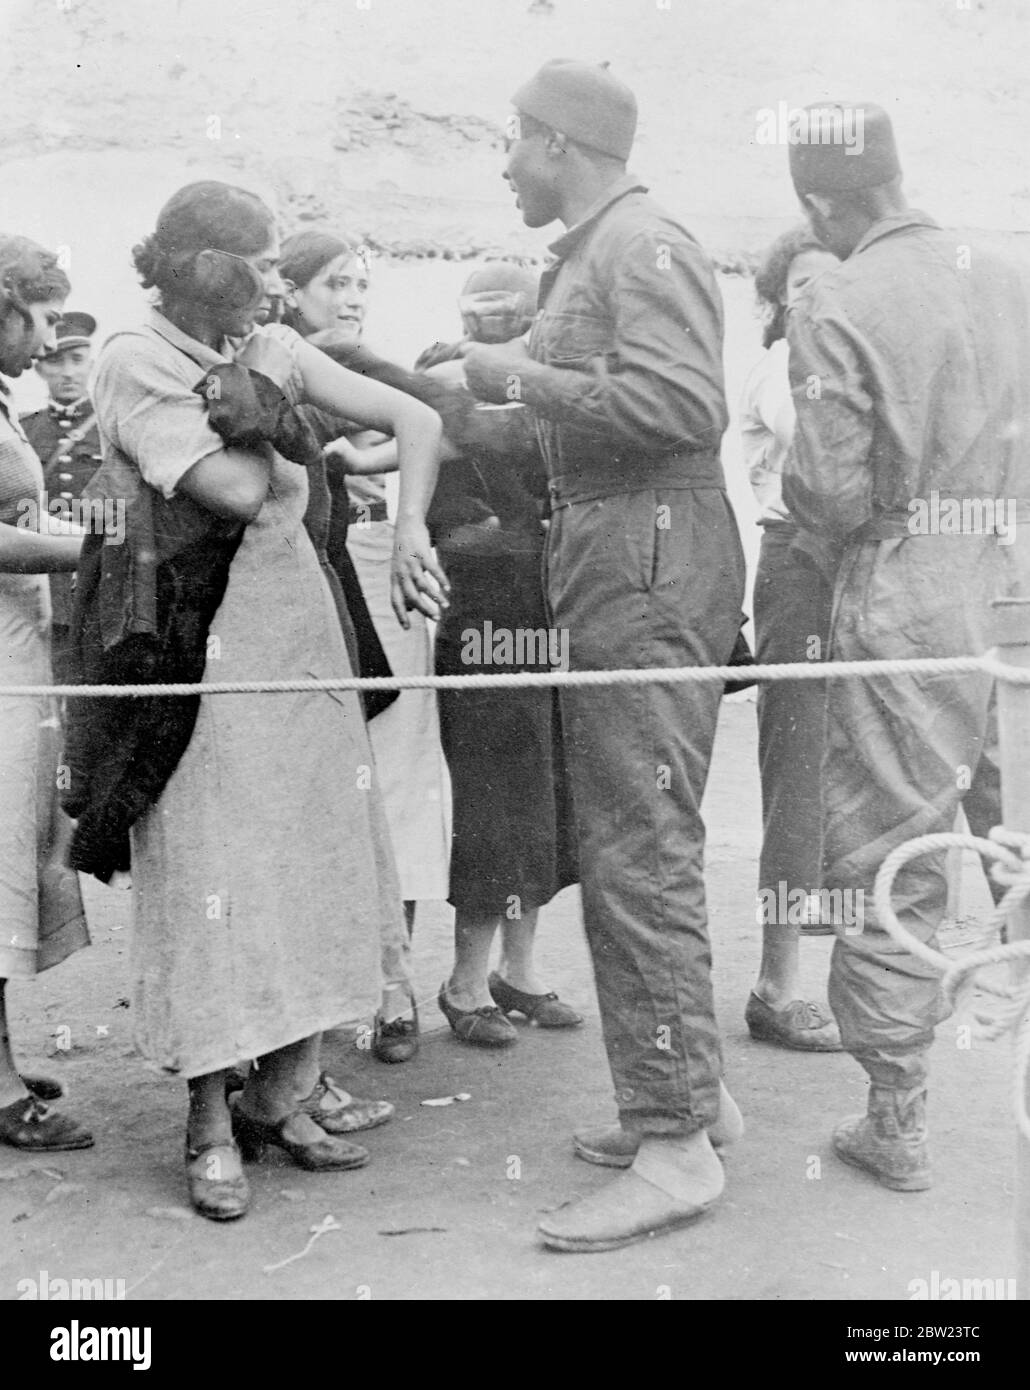 6,000 Menschen in der Massenimpfung in Casablanca. In Casablanca, Marokko, wurden massenhafte Impfungen durchgeführt, über 6,000 Menschen wurden von der Polizei aufgefahren und mussten durch Auswegsgänge zum Arzt und seinen Assistenten gehen, bevor sie freigelassen wurden. Foto zeigt, eine gebürtige Frau, die während der 'Round Up' in Casablanca geimpft wird. 12 Februar 1938 Stockfoto